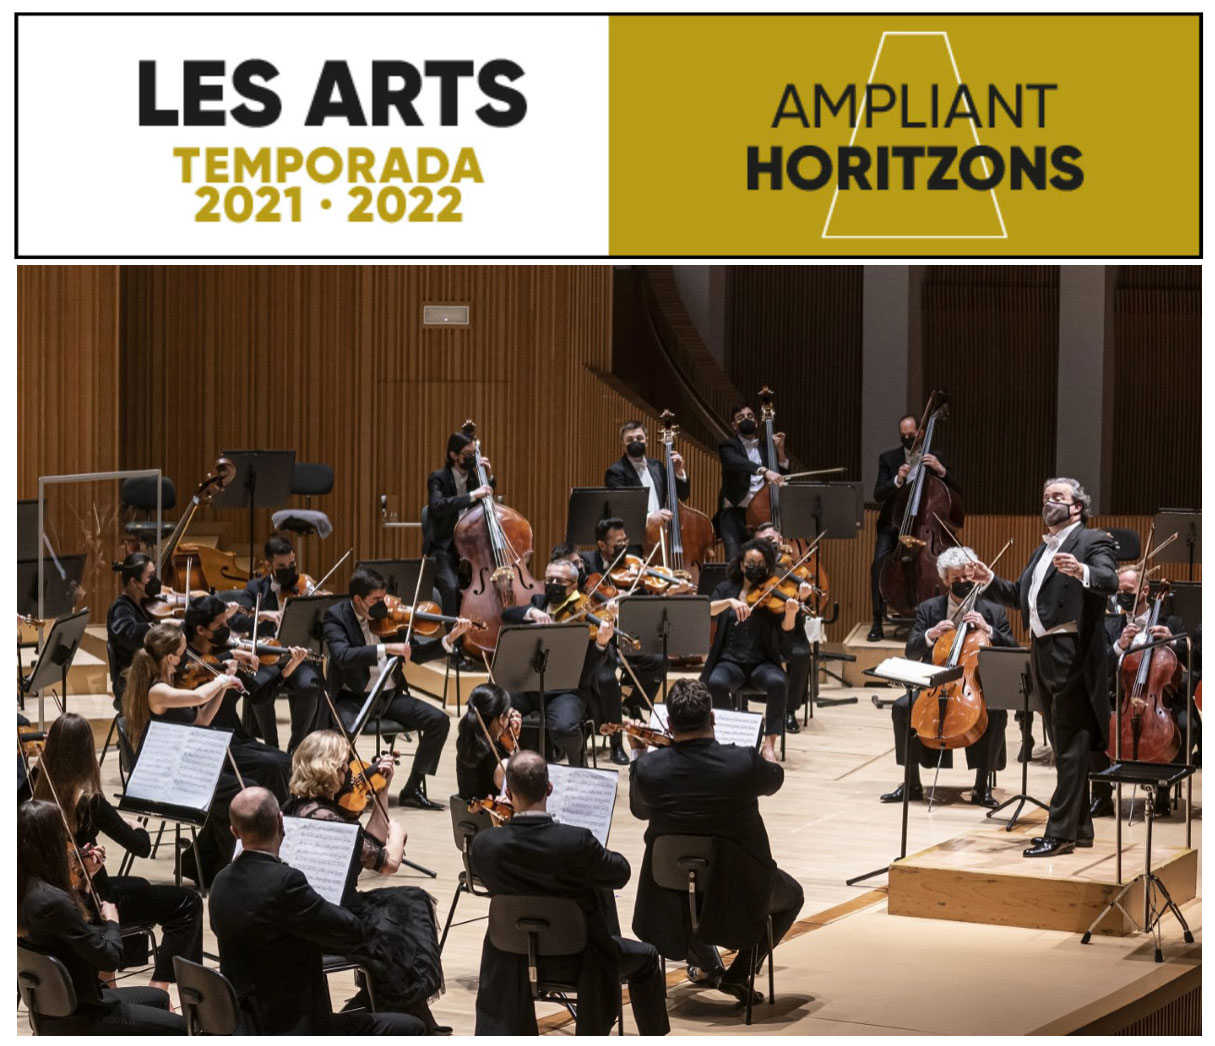 Les Arts inaugura la Temporada 2021-2022 con dos conciertos sinfónicos en la provincia de Alicante